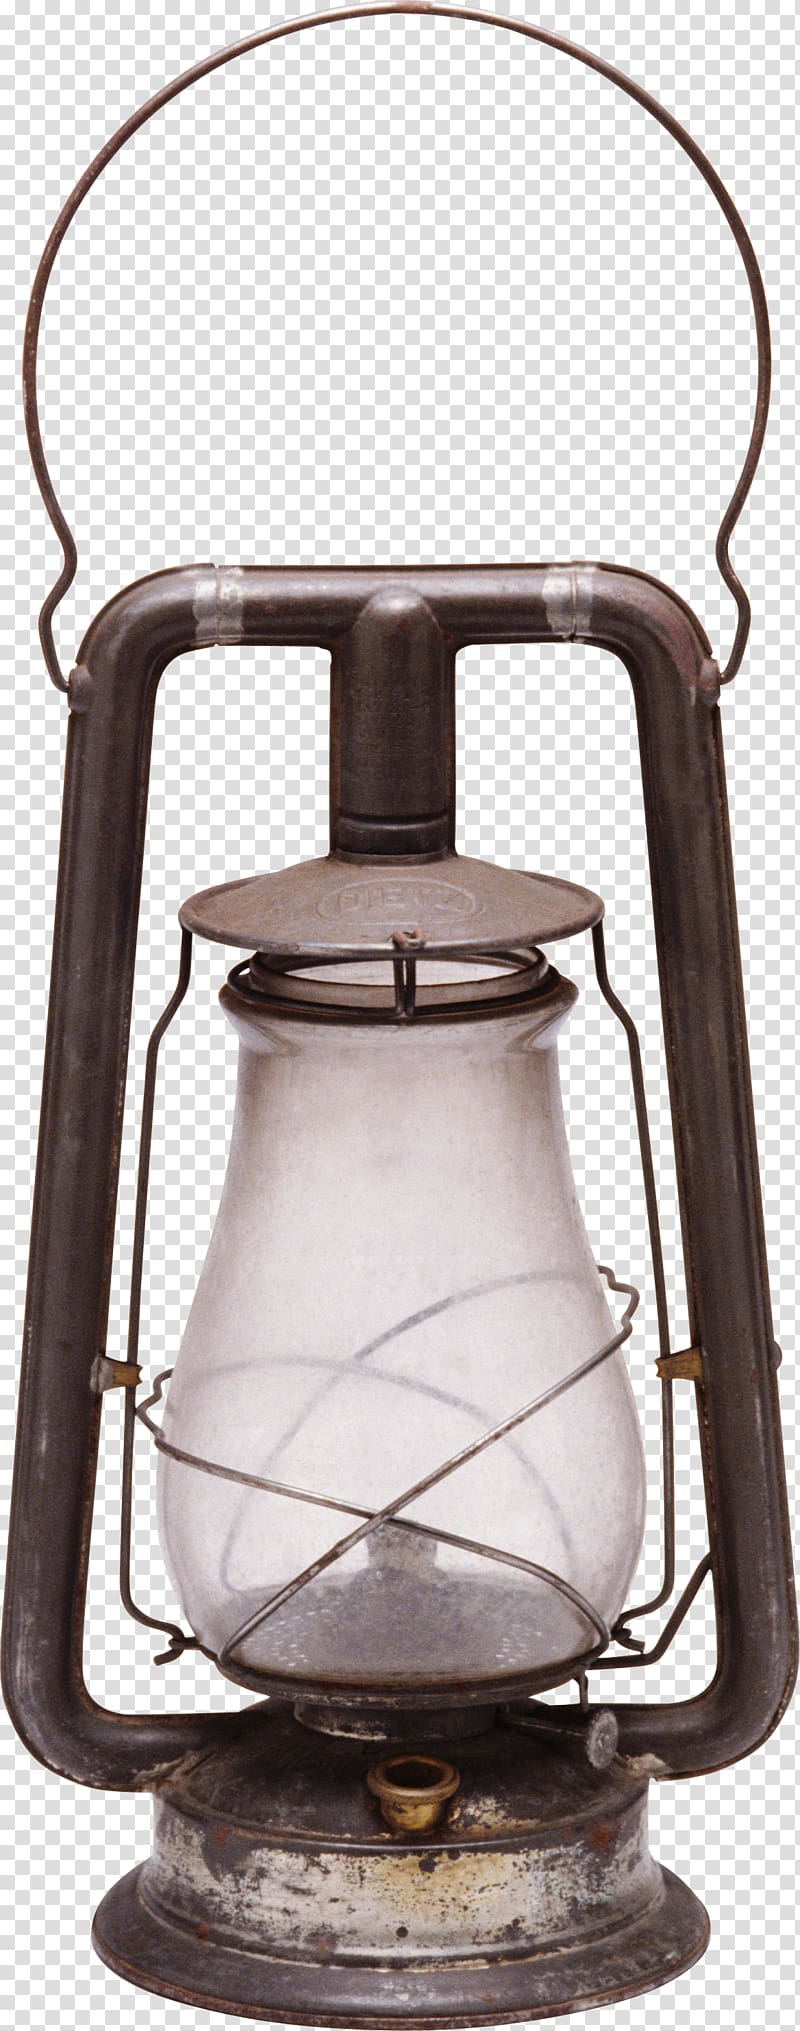 Light Oil lamp Kerosene lamp, lantern transparent background PNG clipart